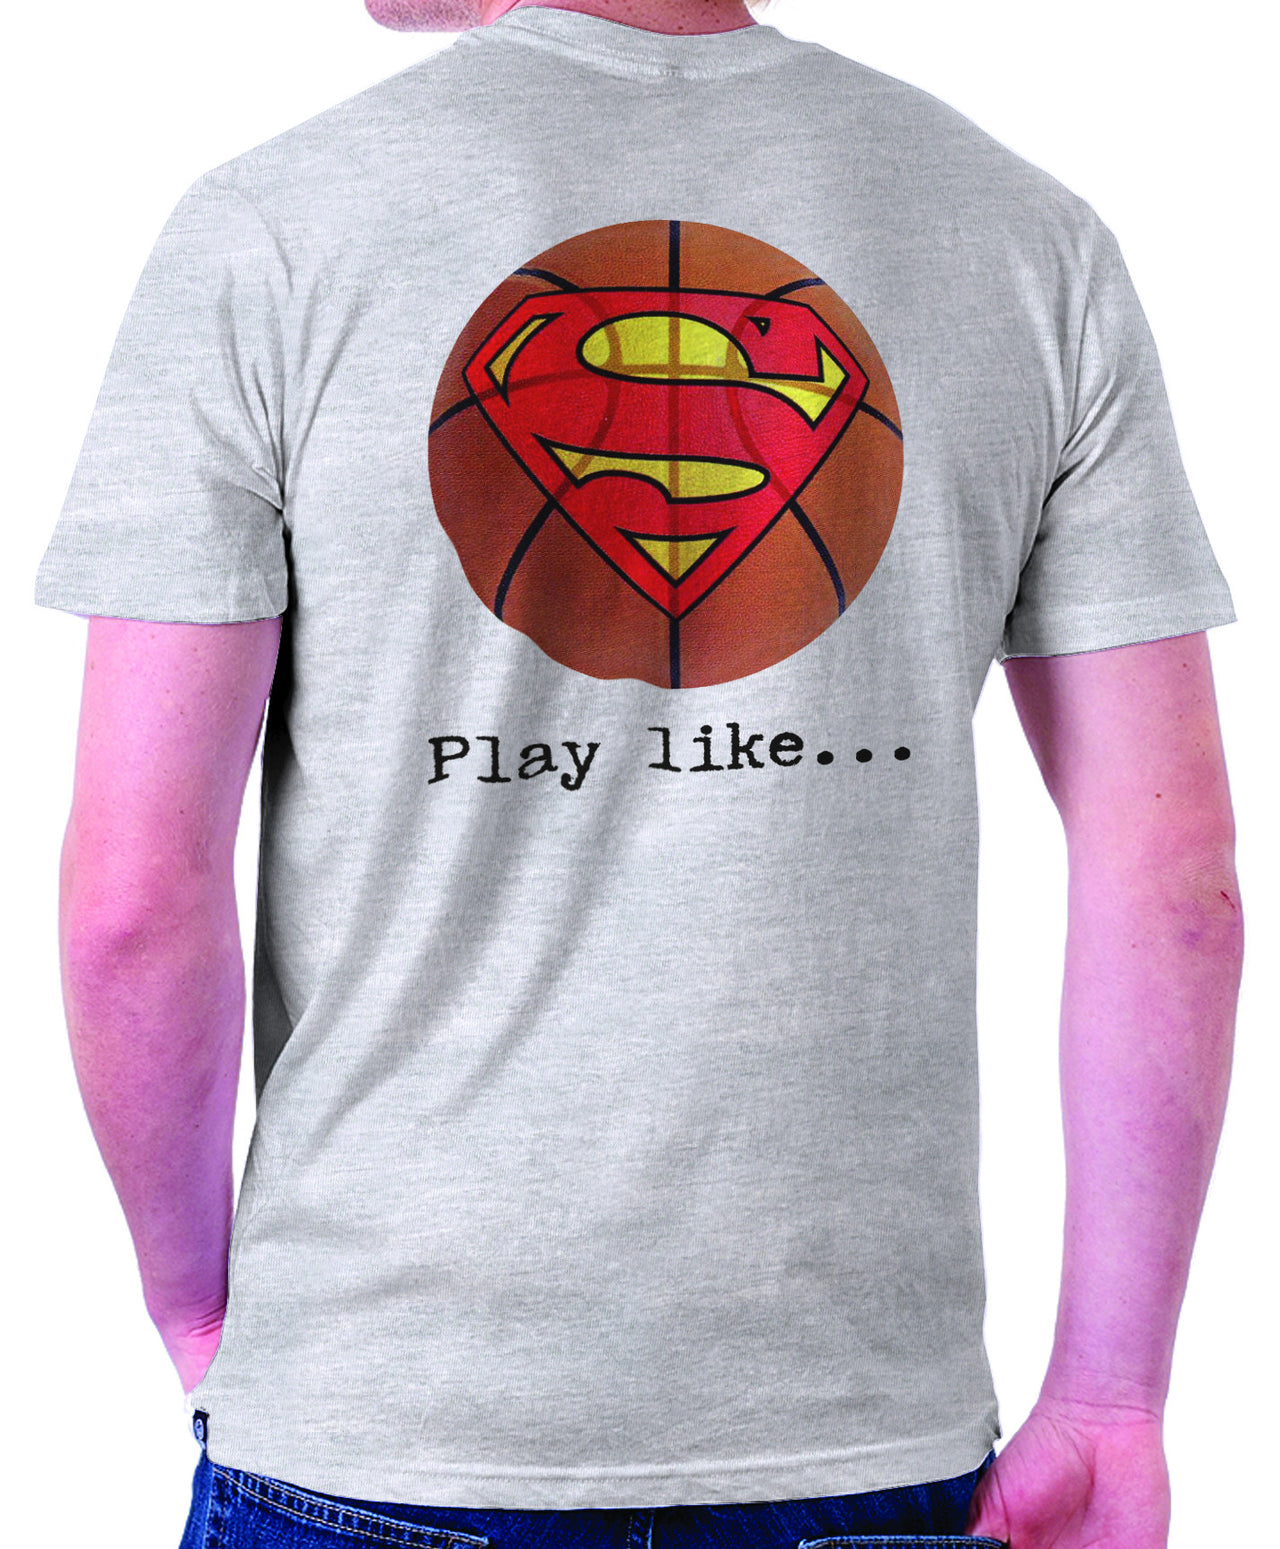 Superman 'Play like' Basketball Logo on Ash Grey Colored Pocket Tshirt - TshirtNow.net - 1